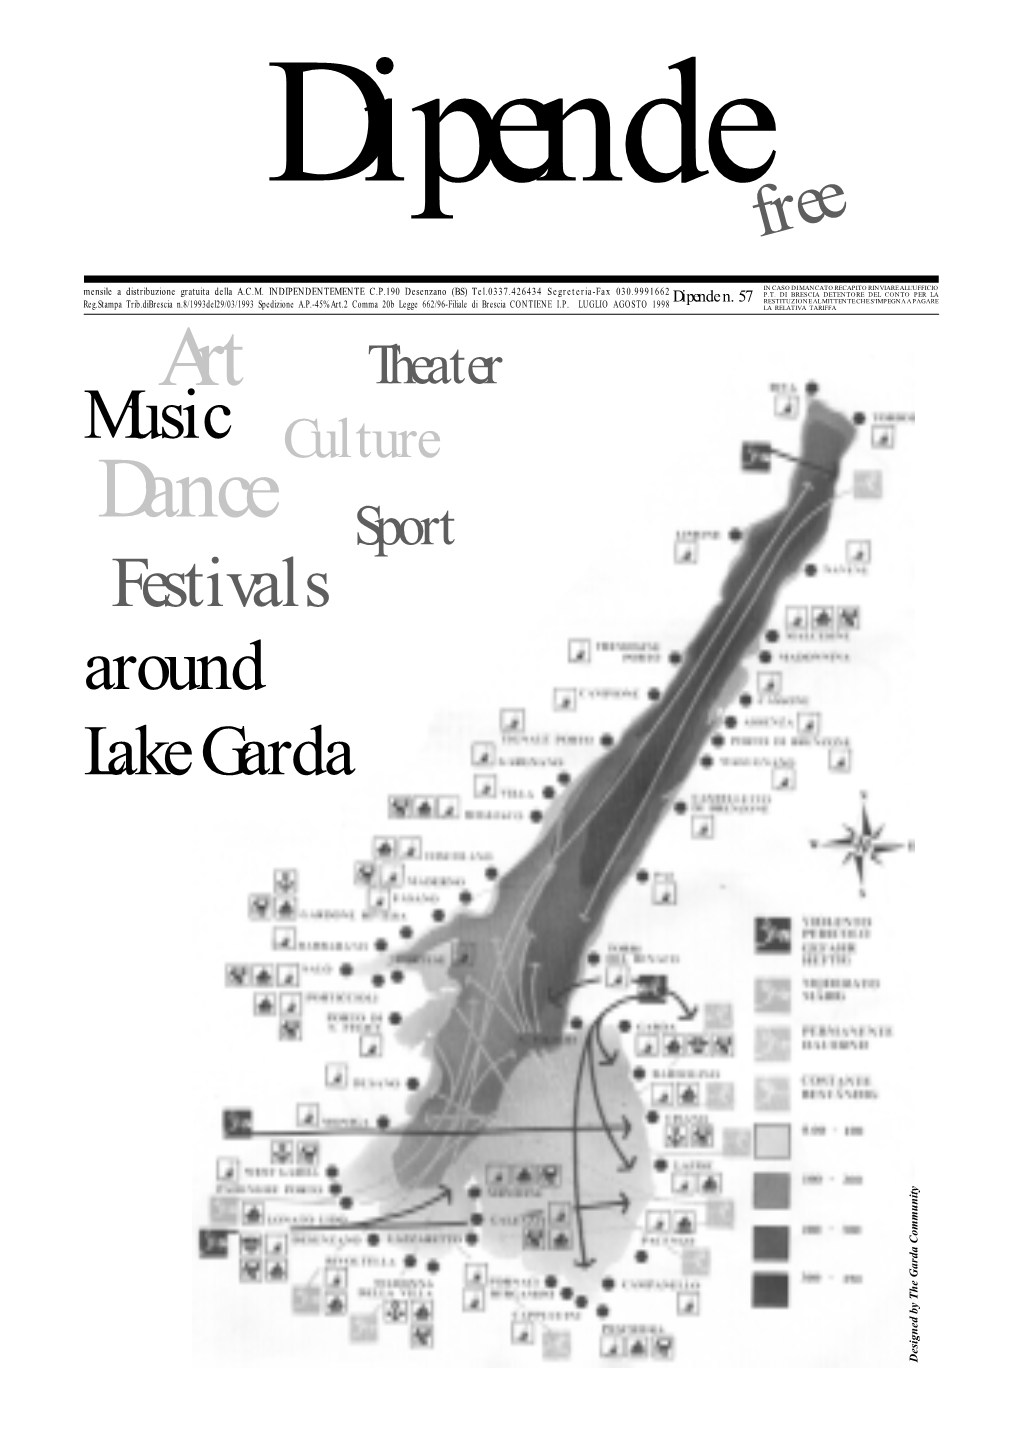 Free Around Lake Garda Festivals Music